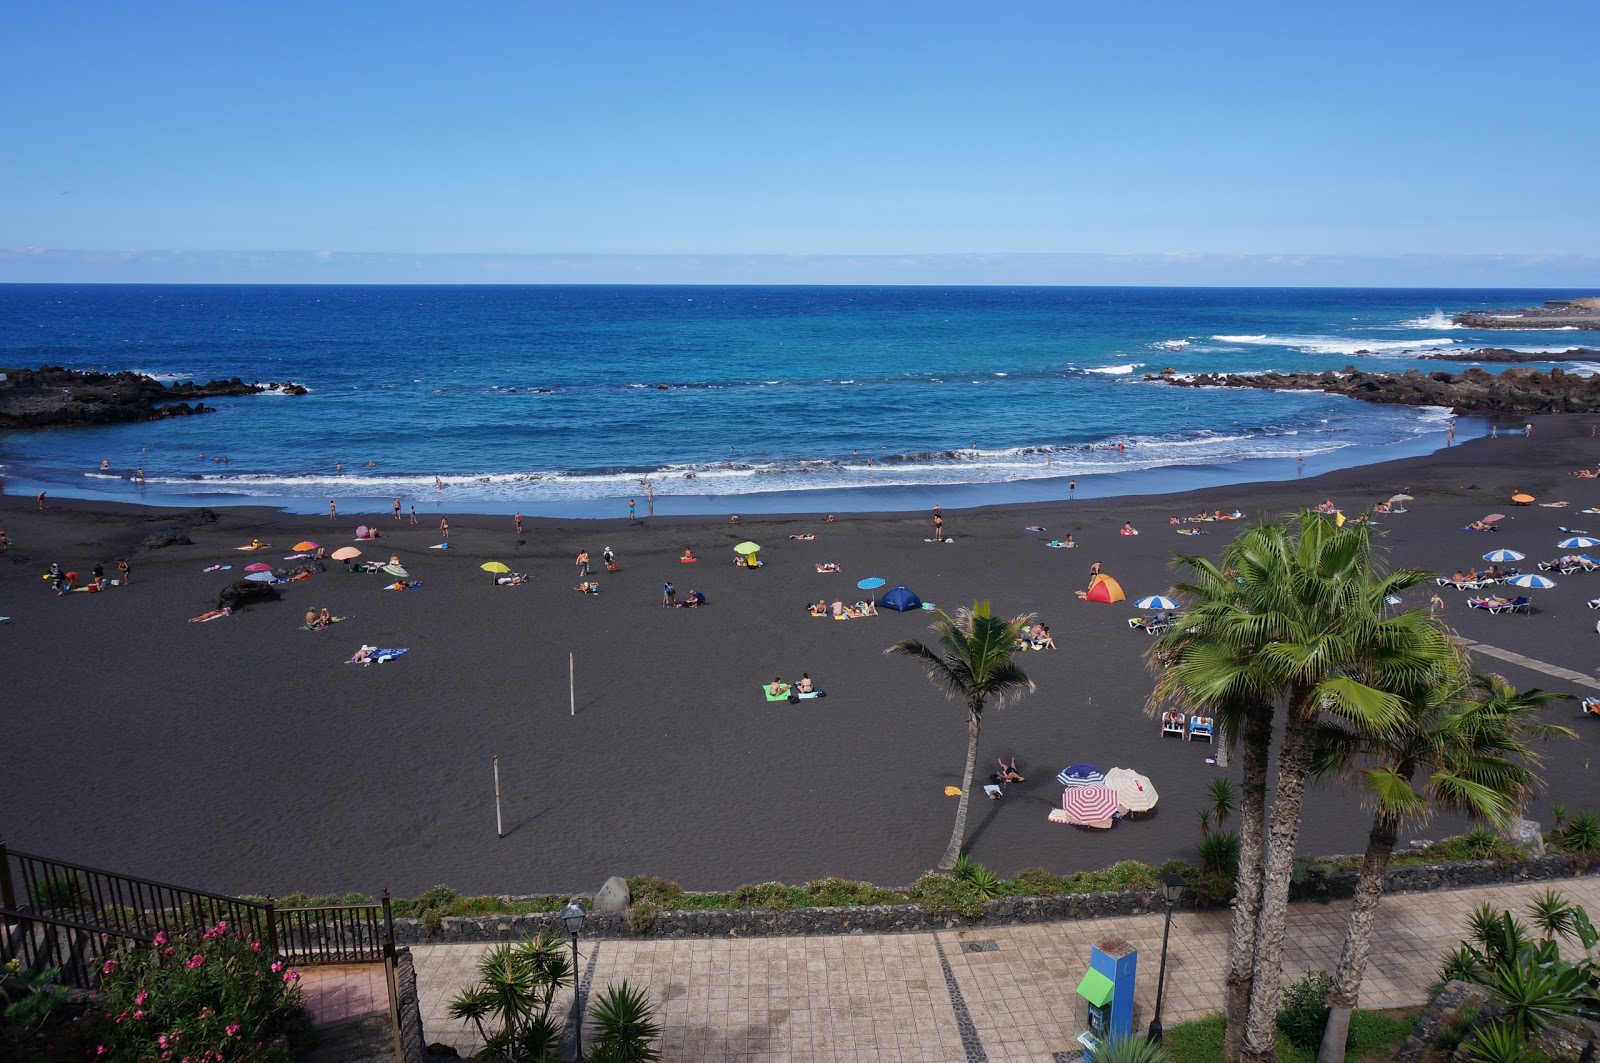 Fotografija Plaža pri gradu (Vrt plaža) z siv fini pesek površino